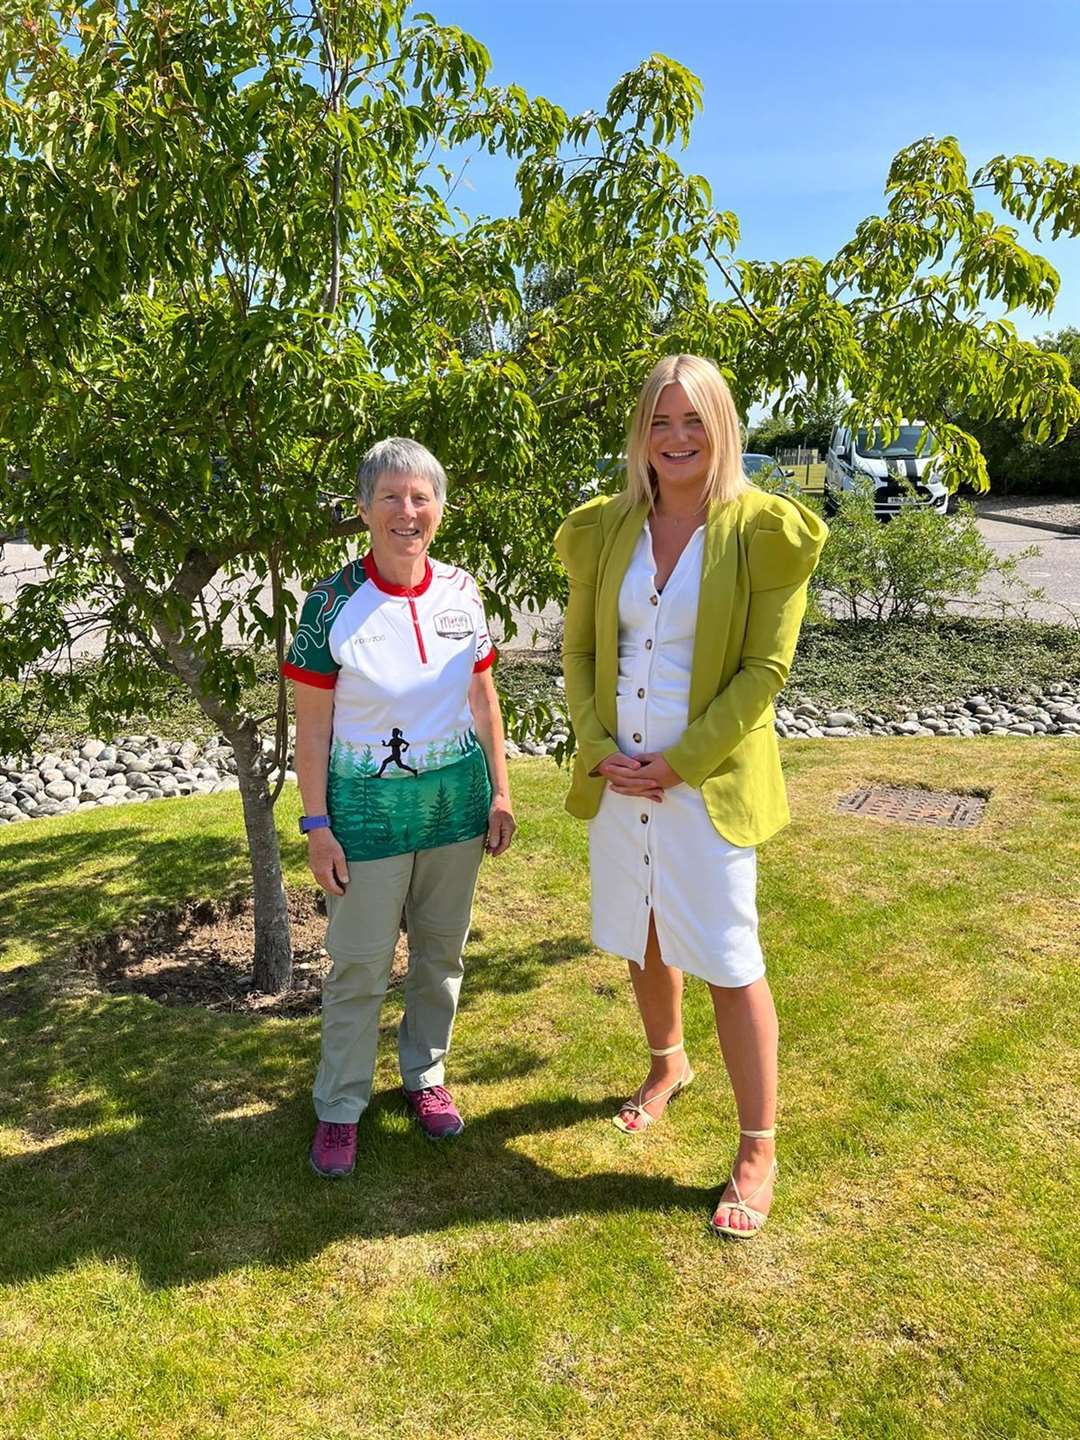 Event co-ordinator Elizabeth Furness (left) with Visit Moray Speyside CEO Gemma Cruickshank. Picture: Jayne MacGregor